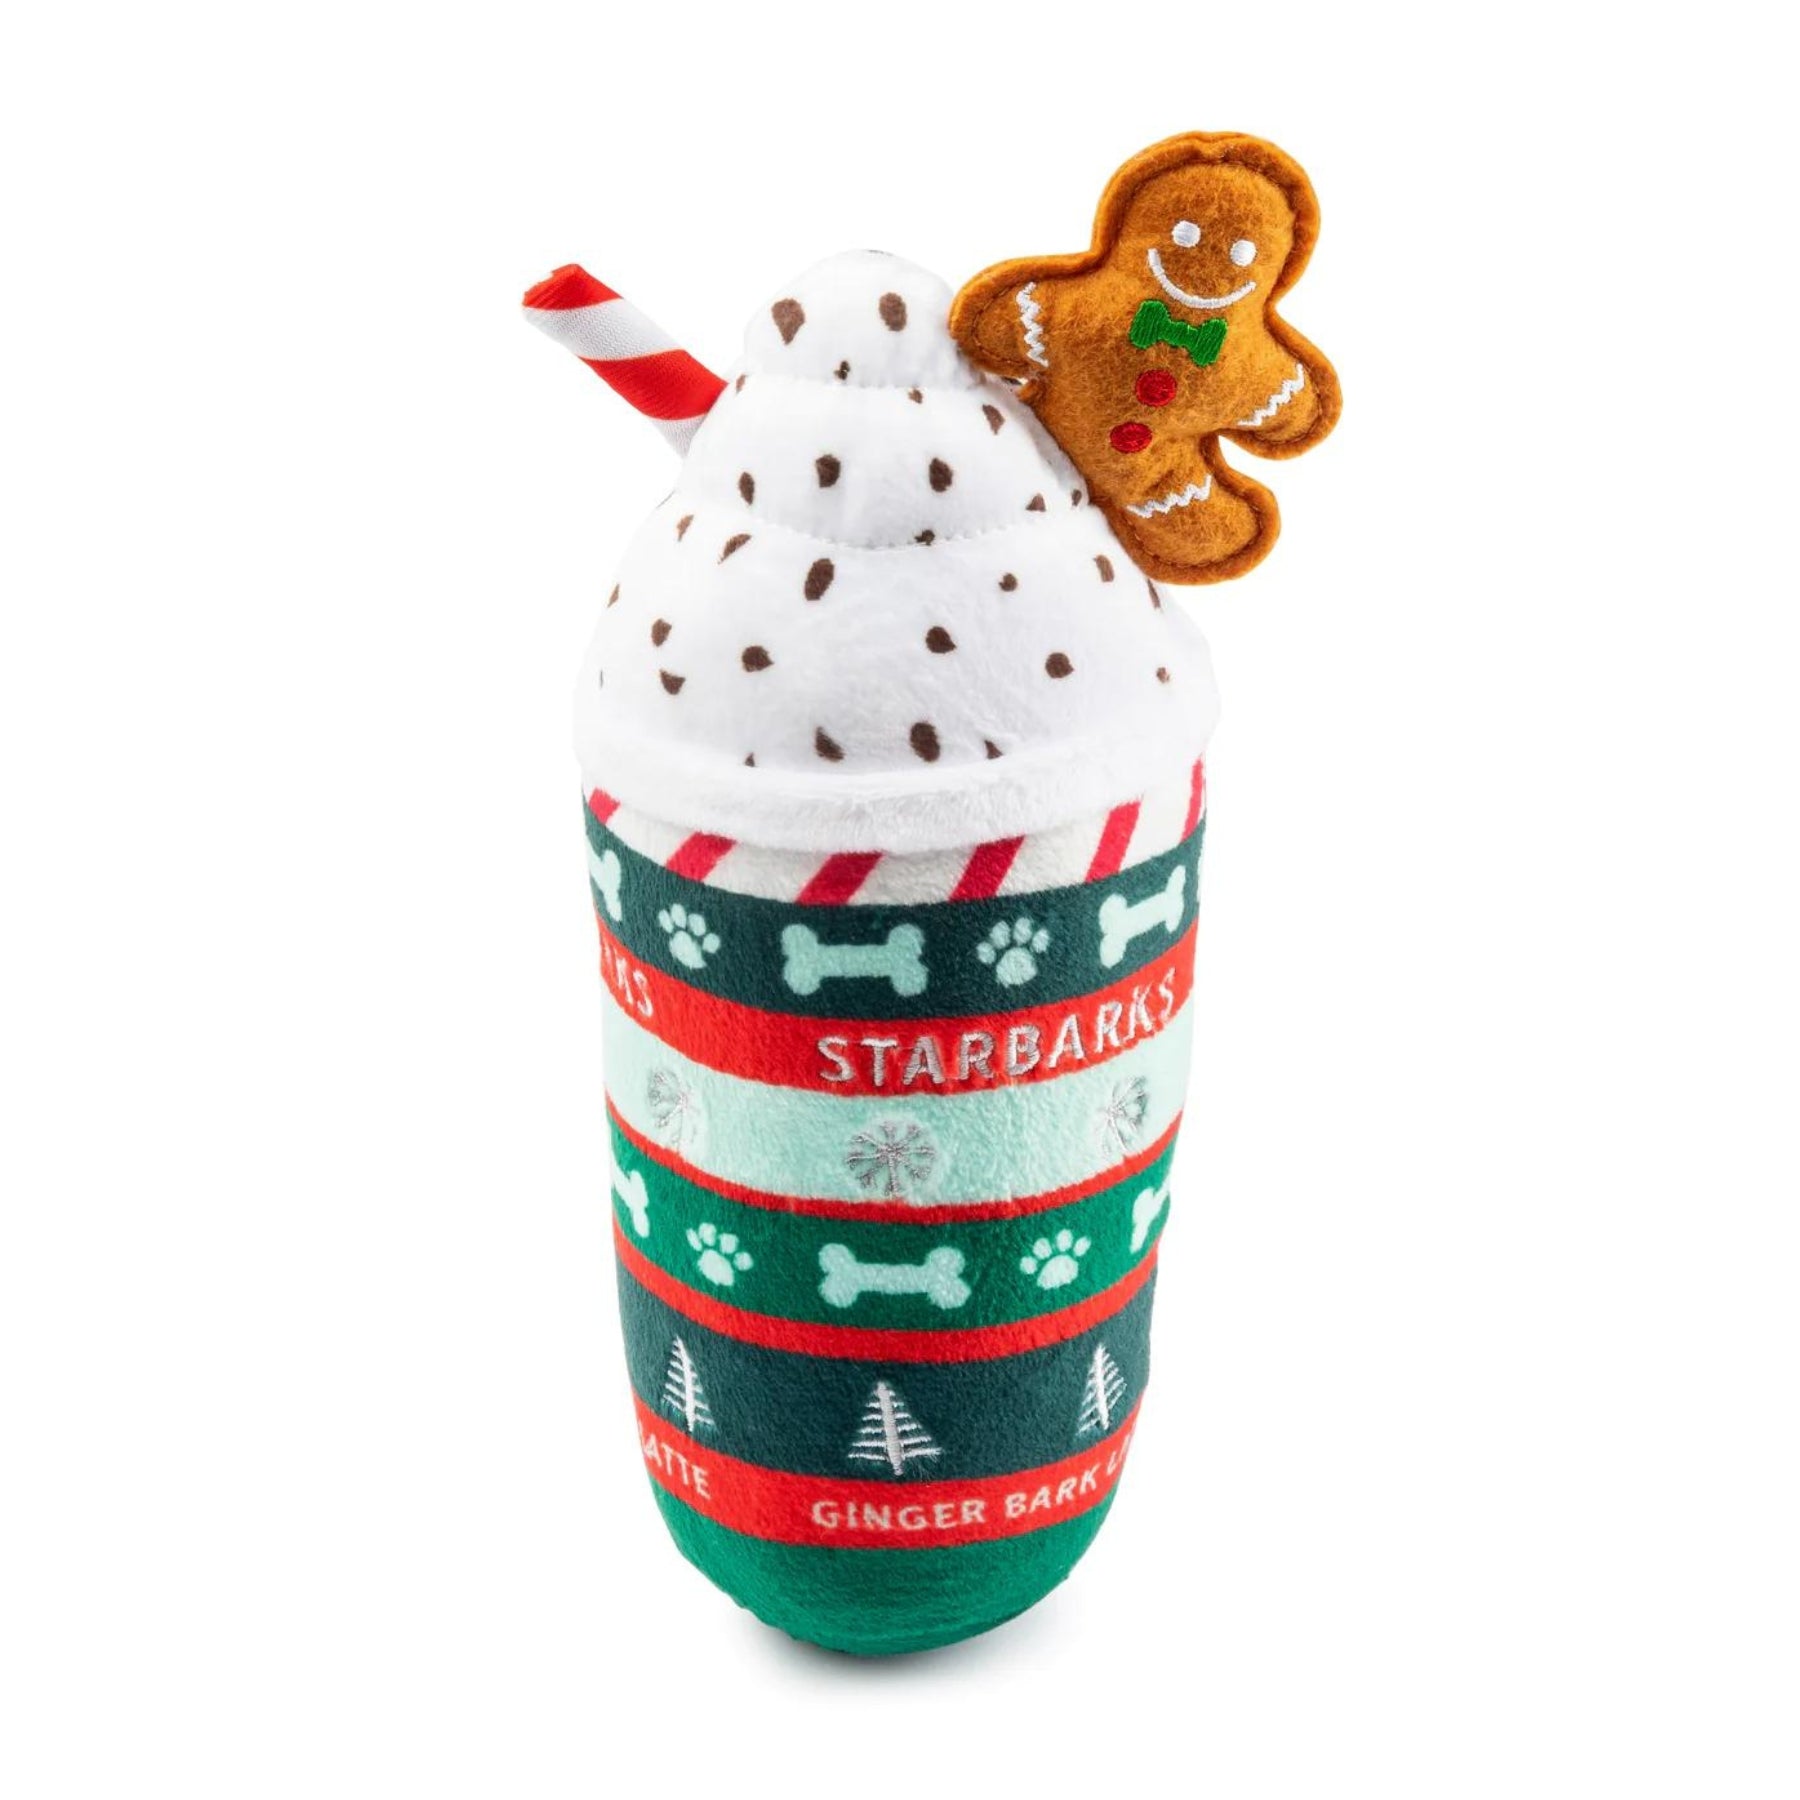 Starbarks Ginger Bark Latte Christmas Dog Toy